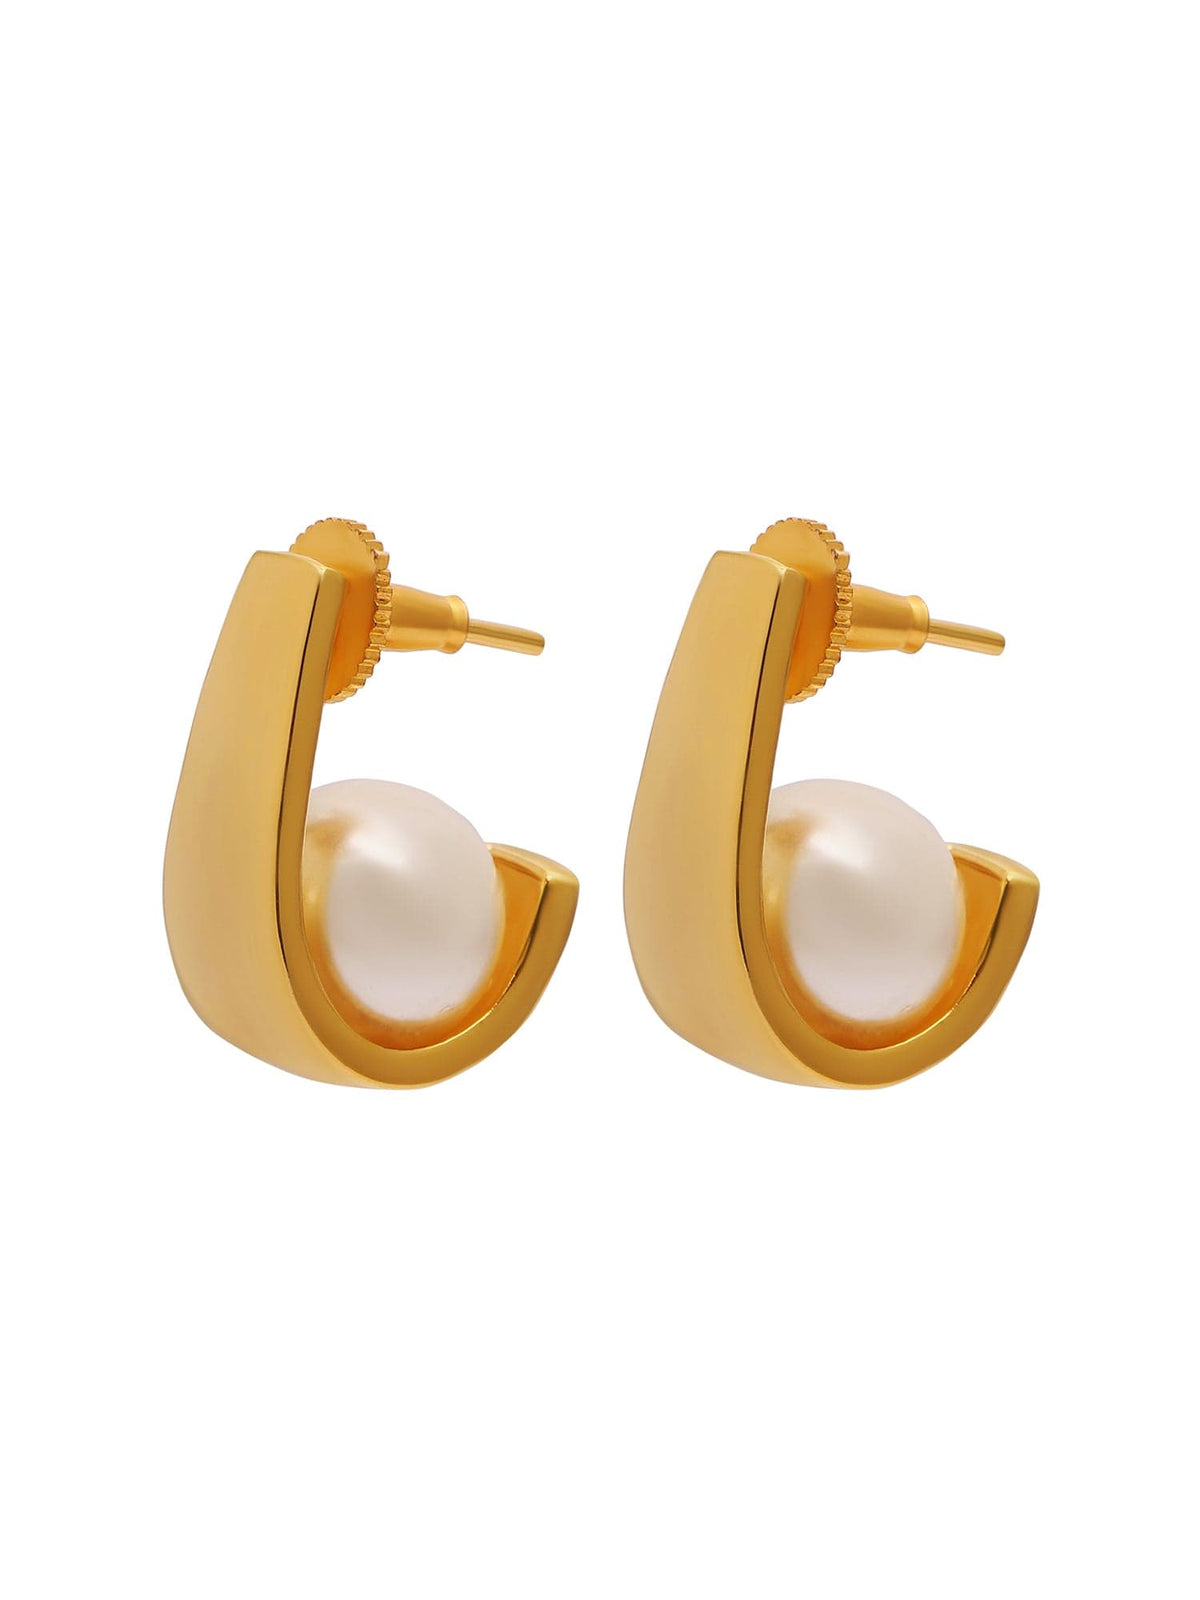 Aurora pearl earrings